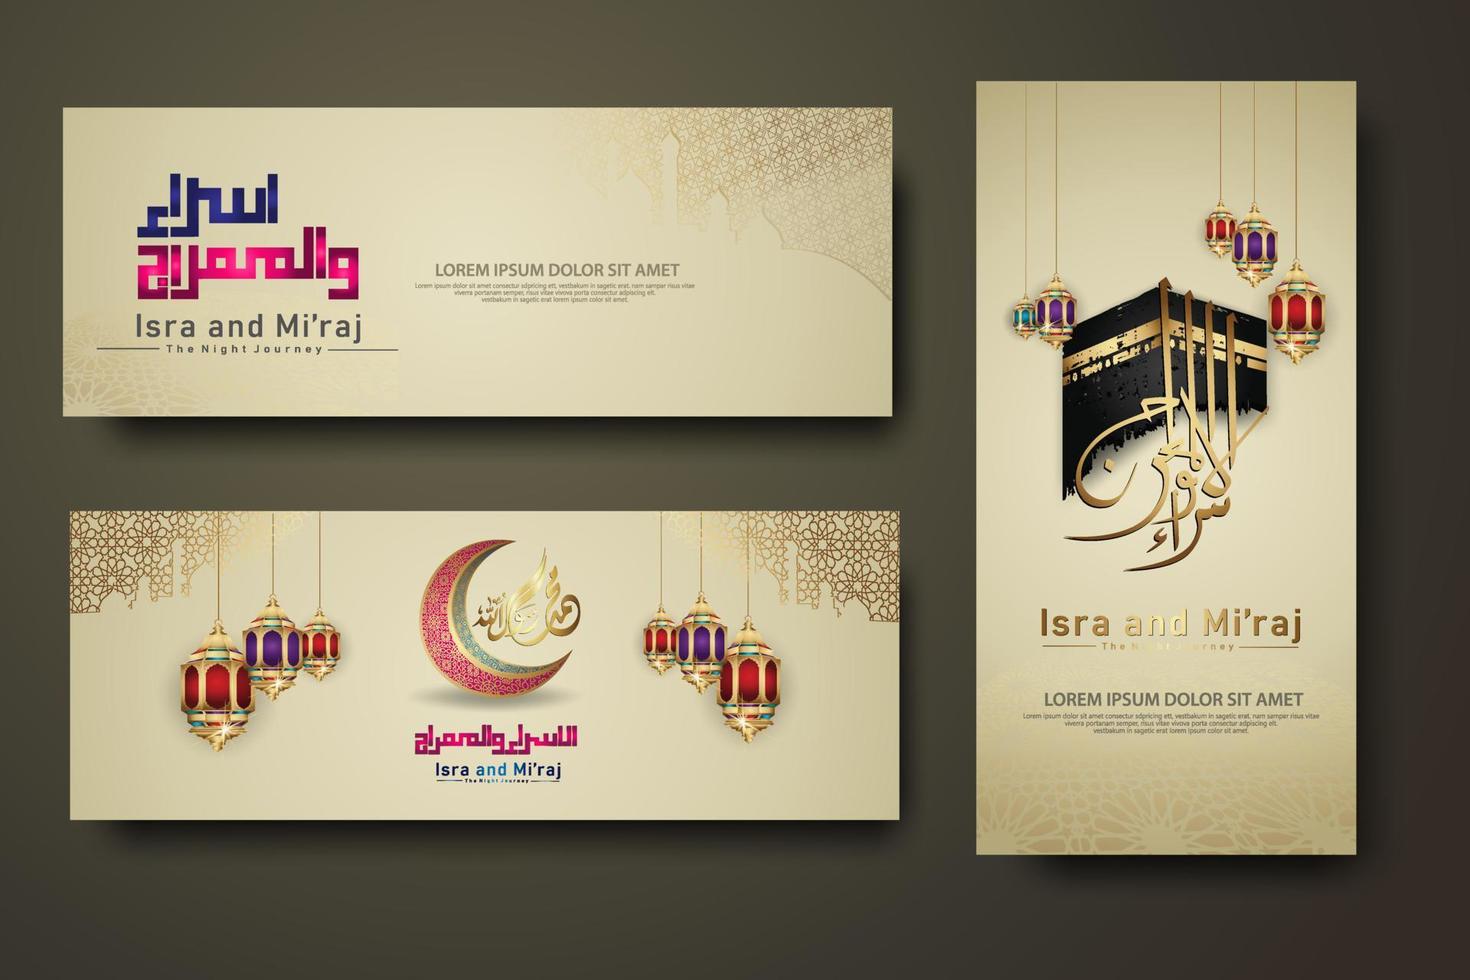 al-isra wal mi'raj prophète muhammad ensemble de calligraphie modèle de bannière vecteur